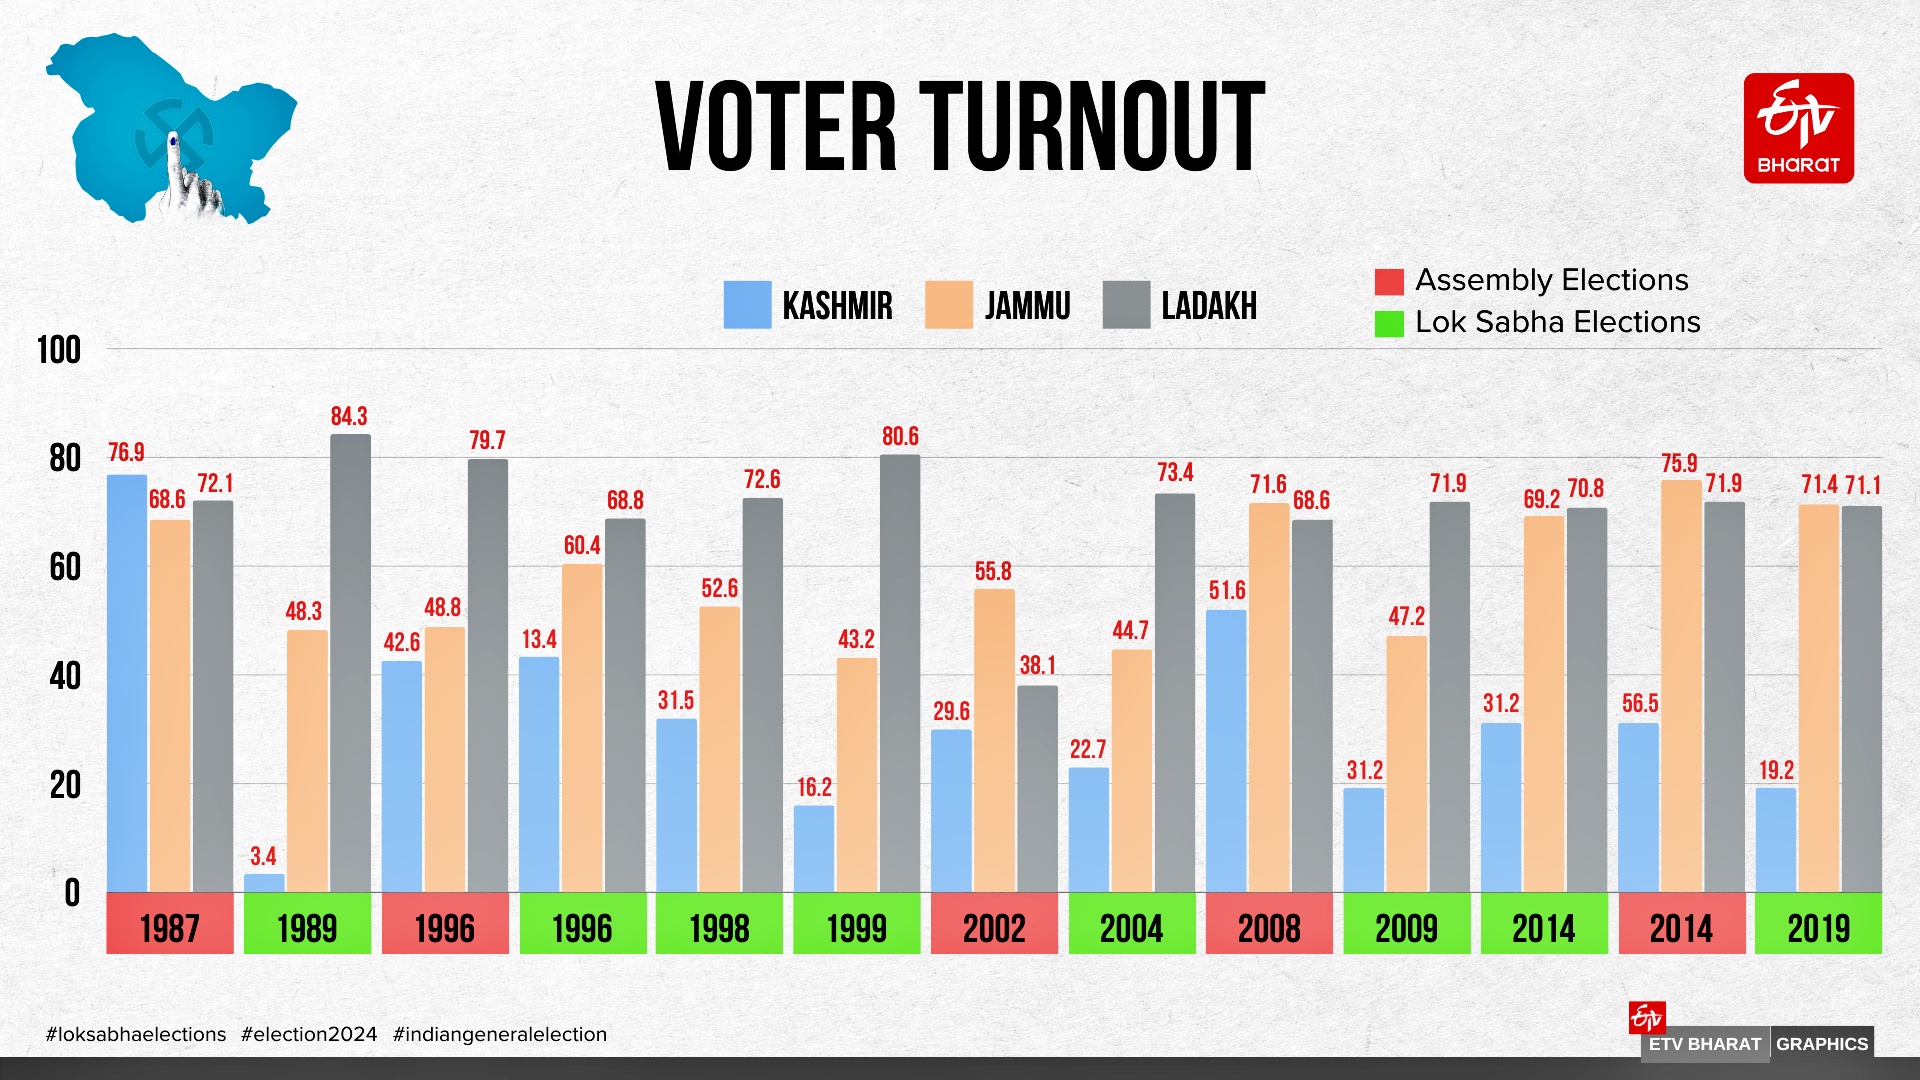 وادی کا بدلتا ہوا ووٹنگ پیٹرن: باقی بھارت کی طرح کشمیر میں بھی ووٹنگ ہوئی، جانیں کیسے؟